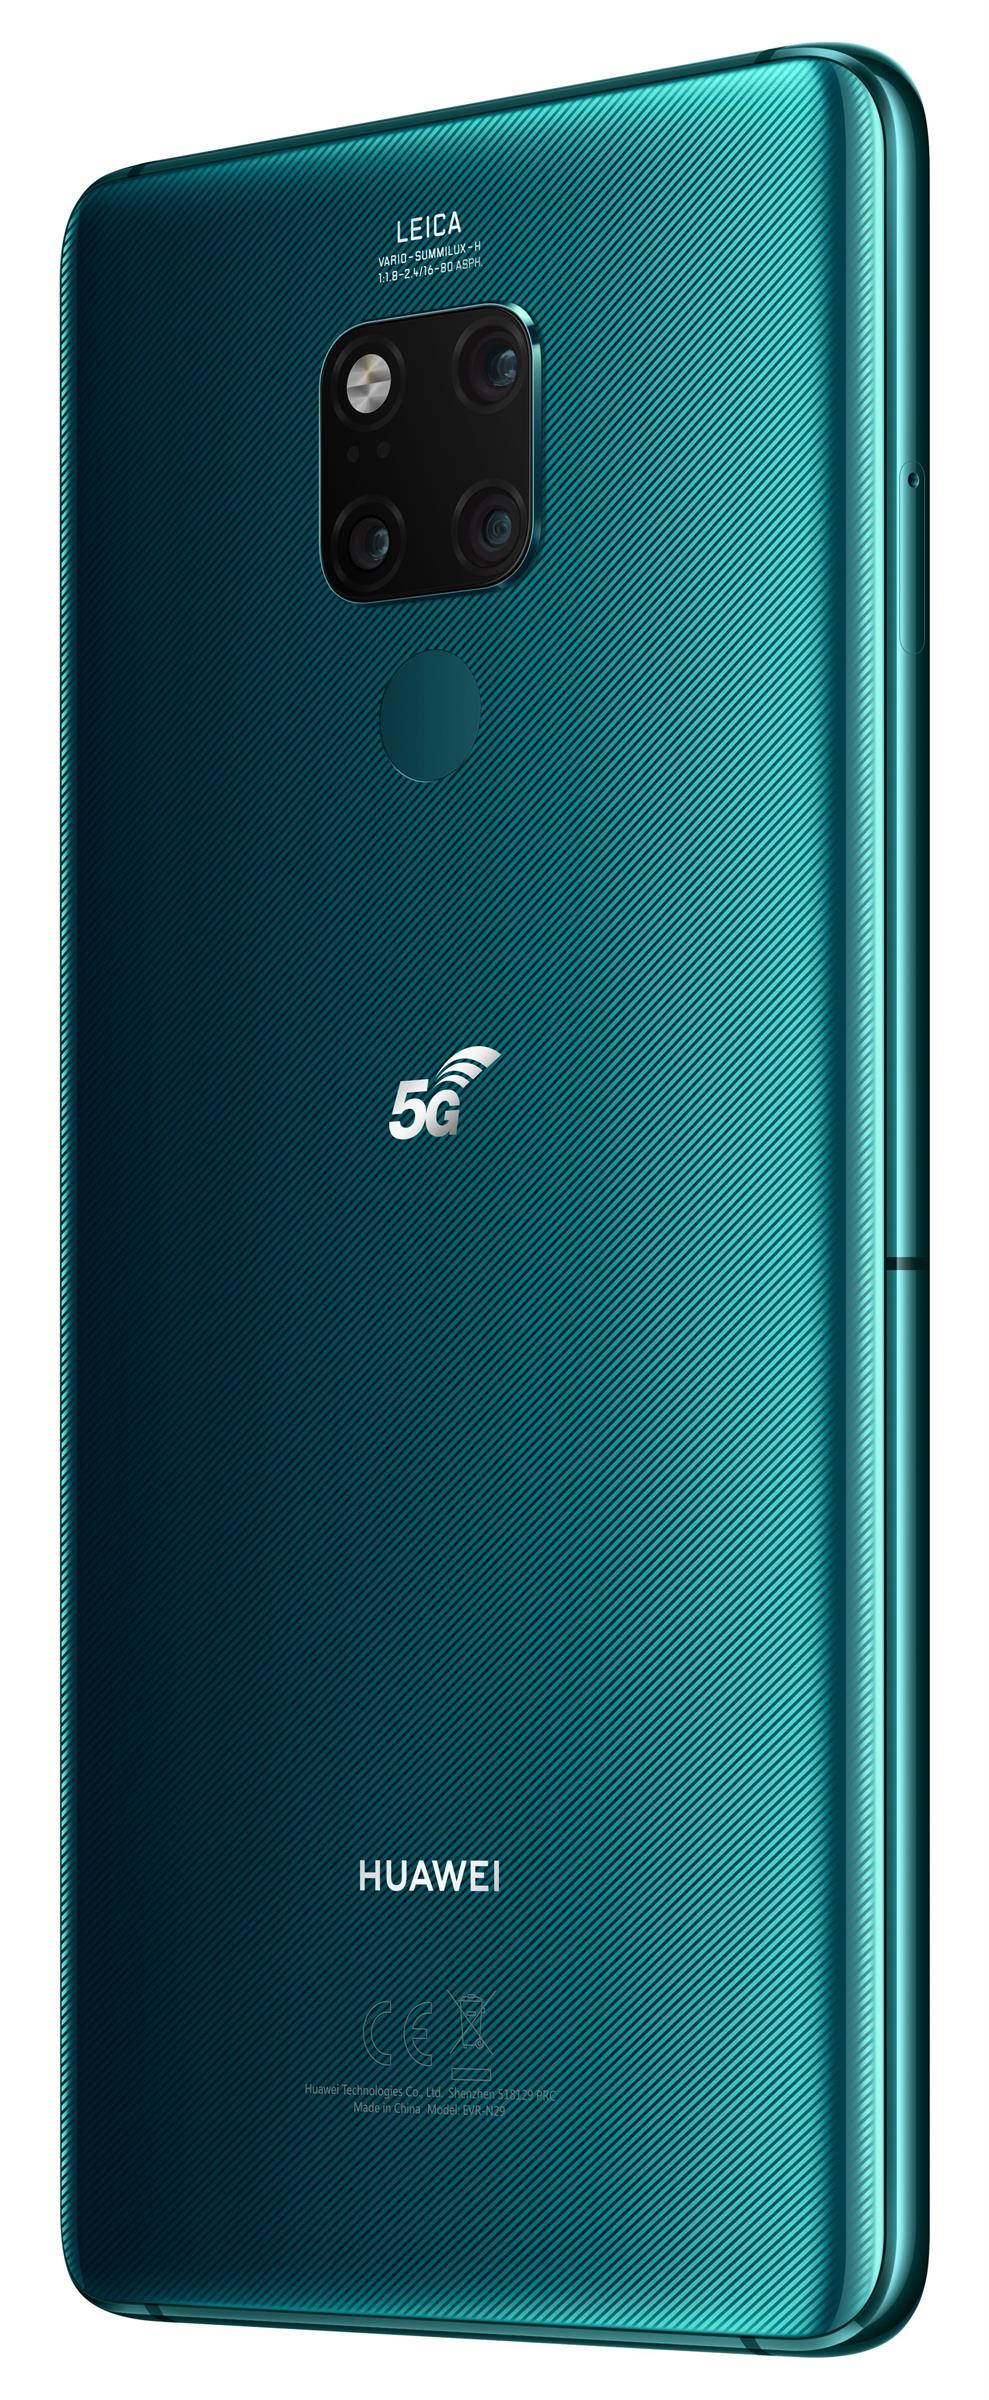 Huawei Mate20 X 5G 